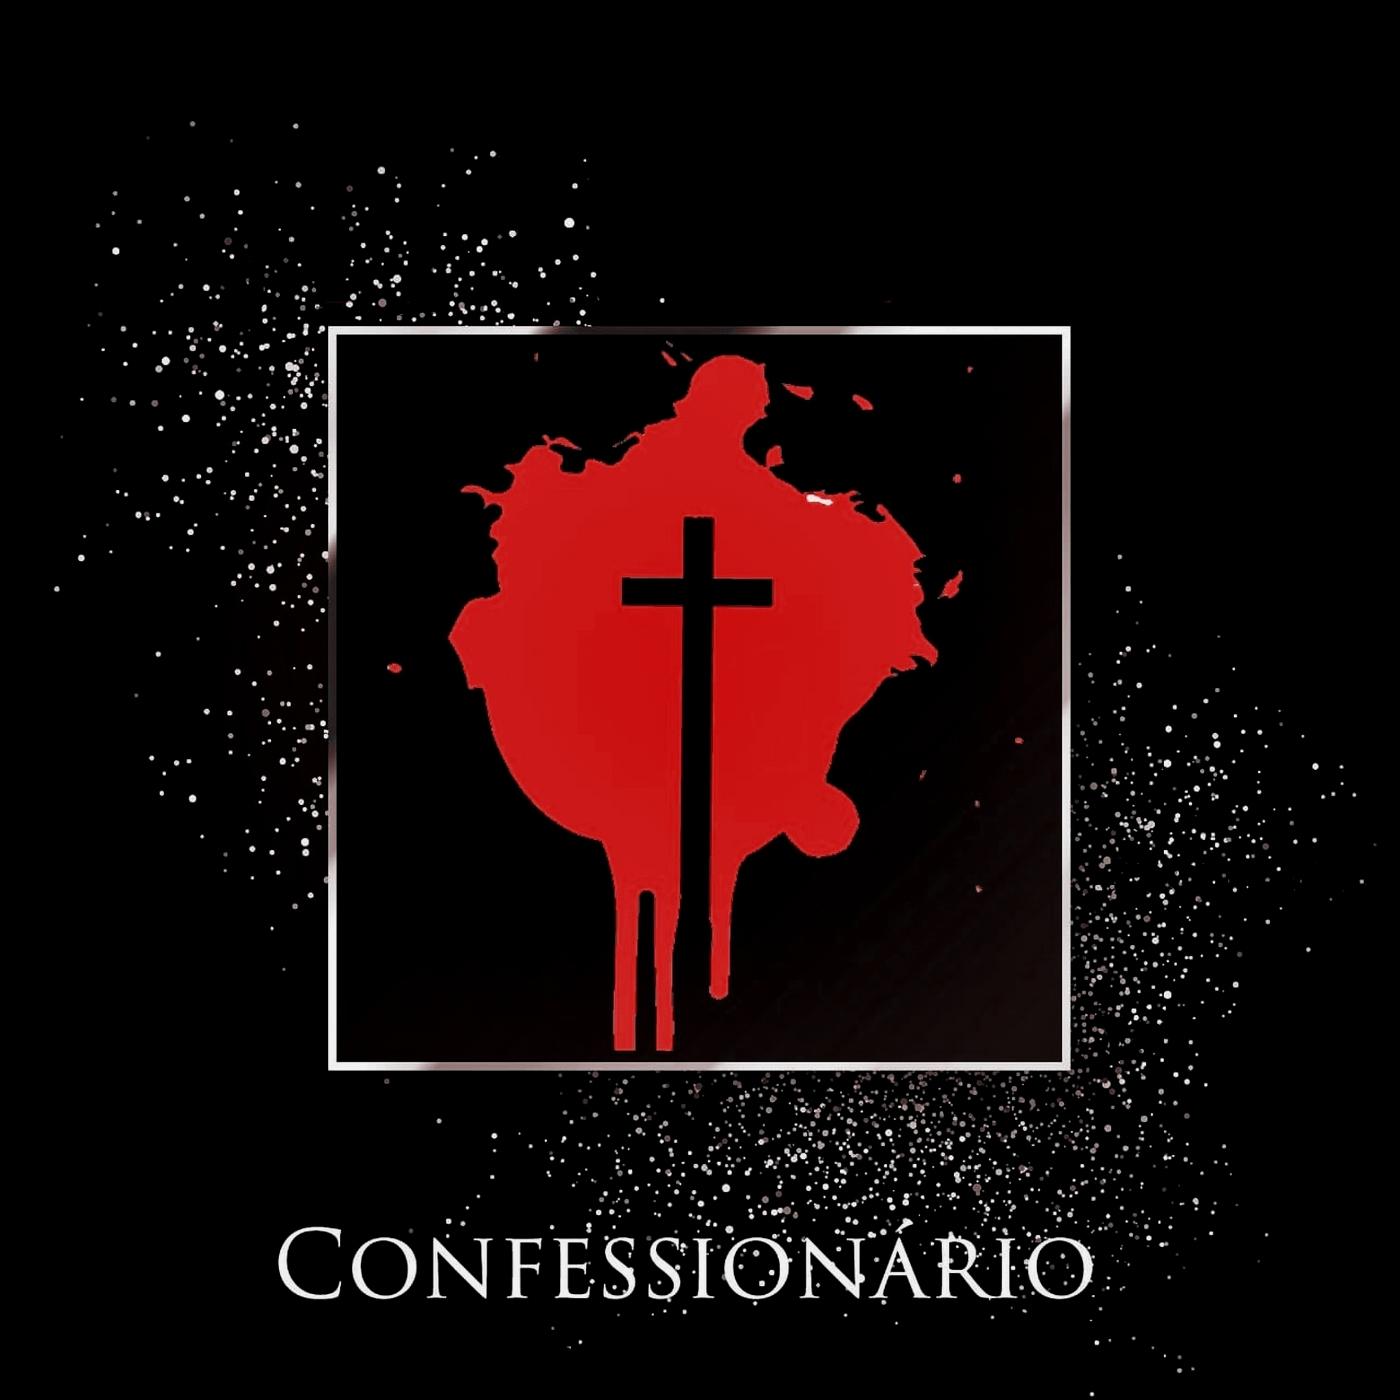 Confessiona rio